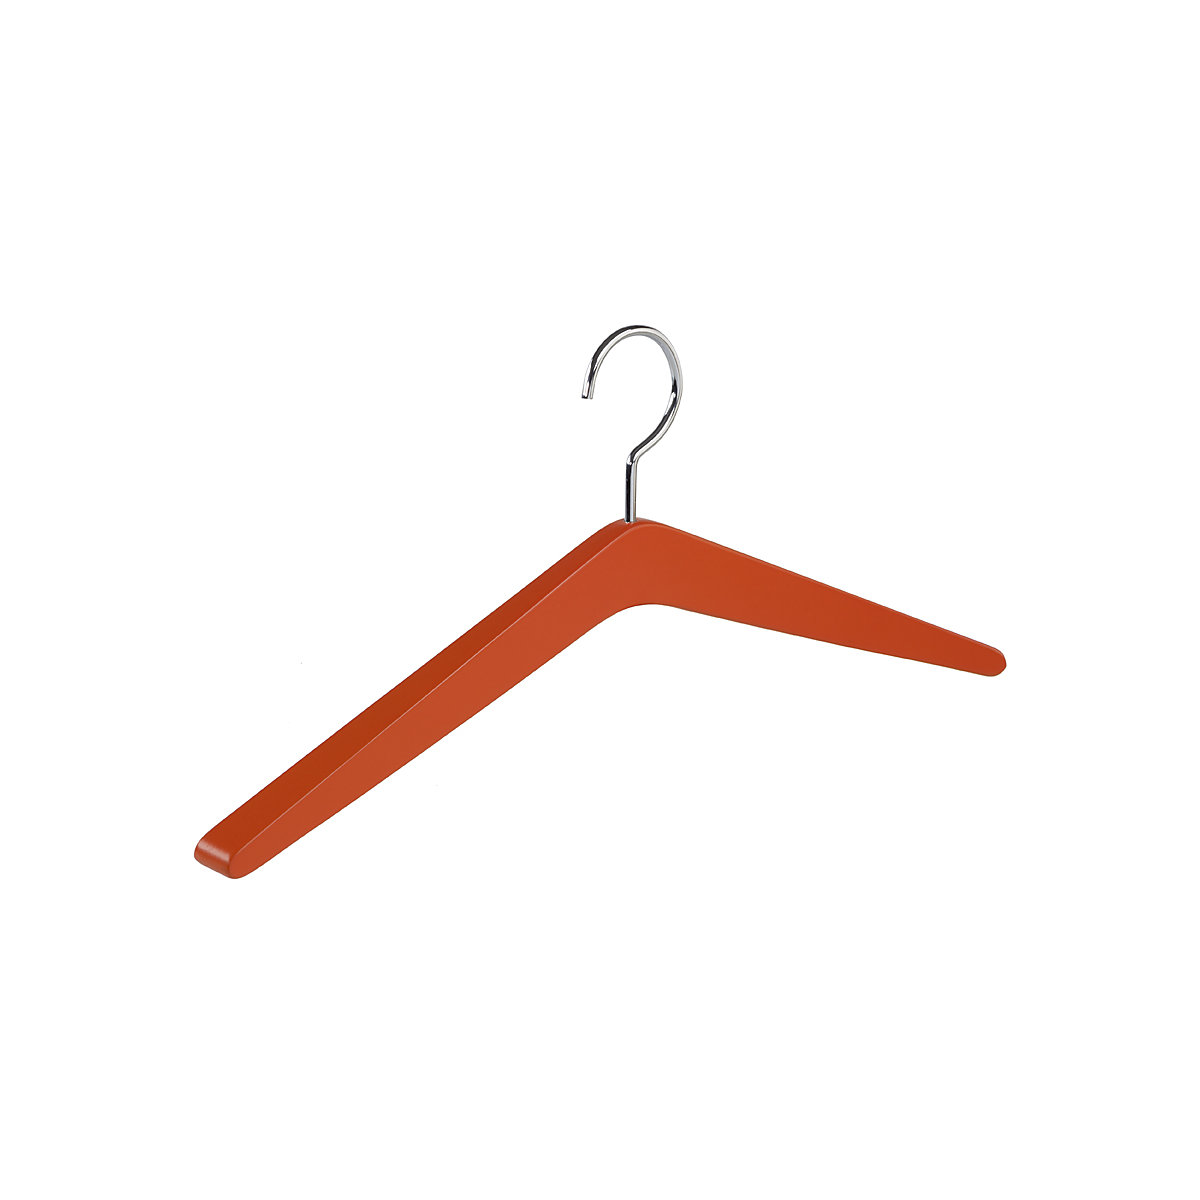 WOOD wooden coat hanger, WxH 450 x 110 mm, pack of 4, orange-8